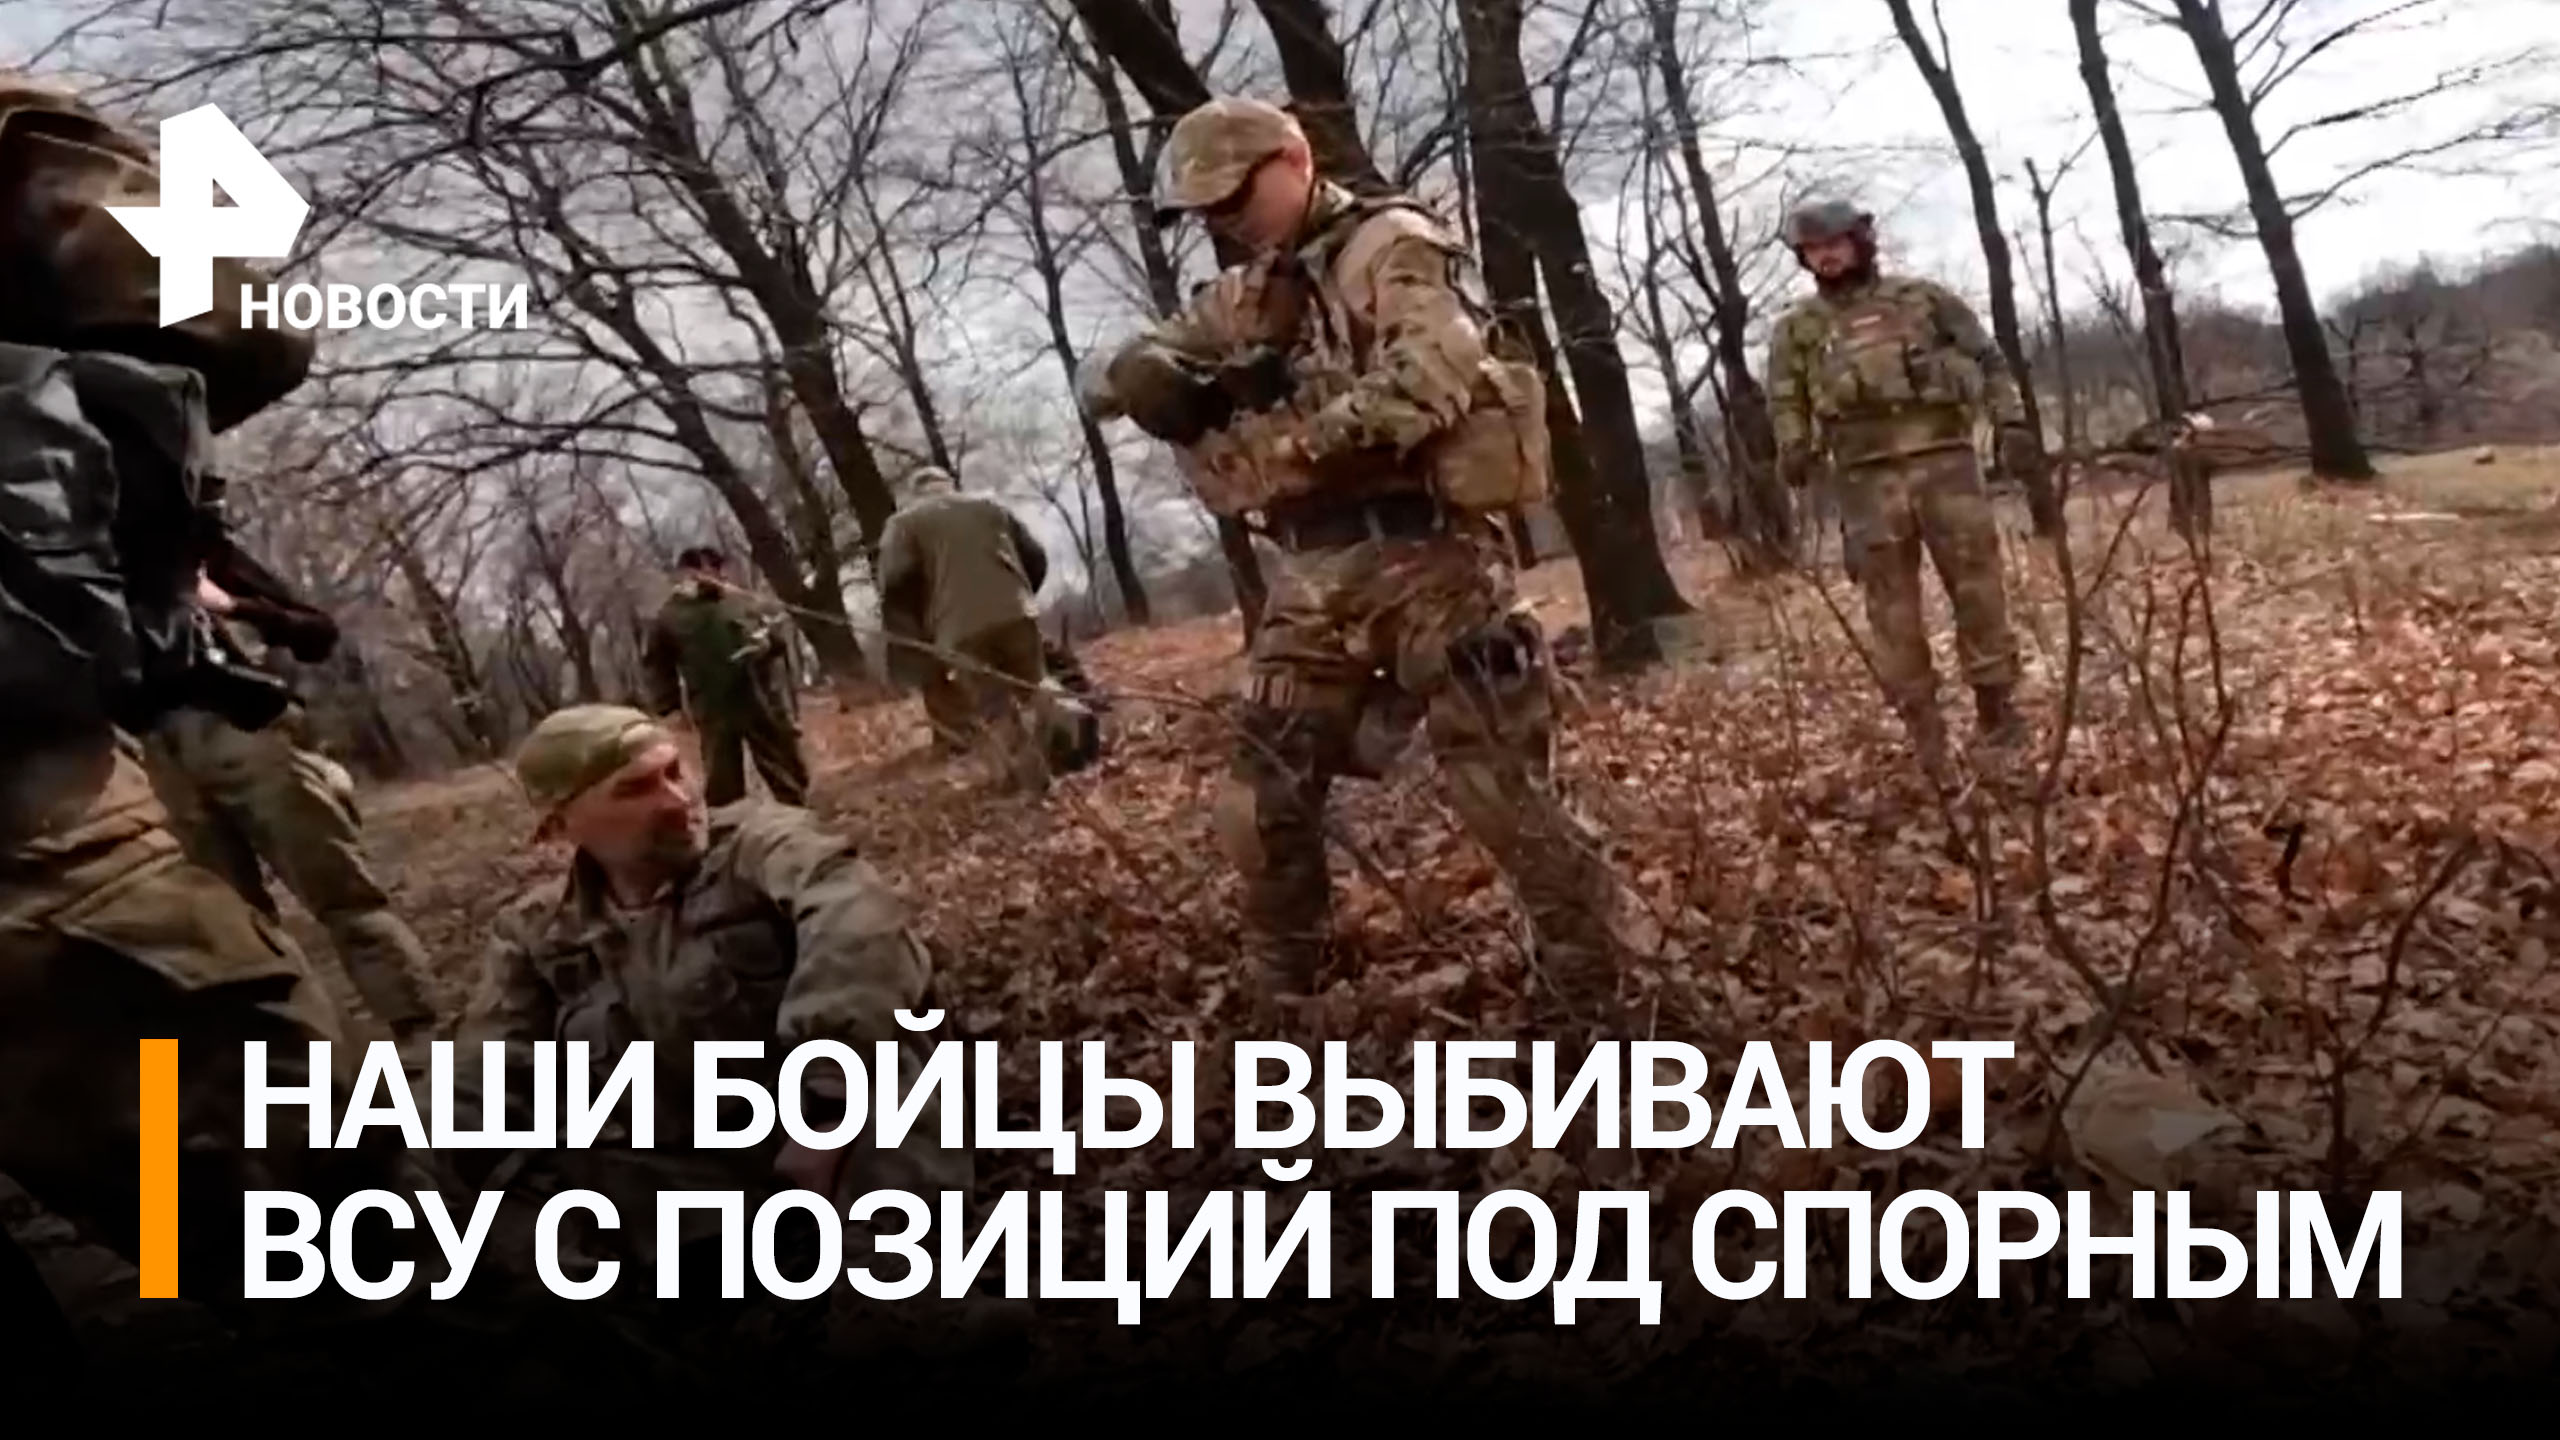 Российские бойцы отбили атаку ВСУ в районе Спорного / РЕН Новости